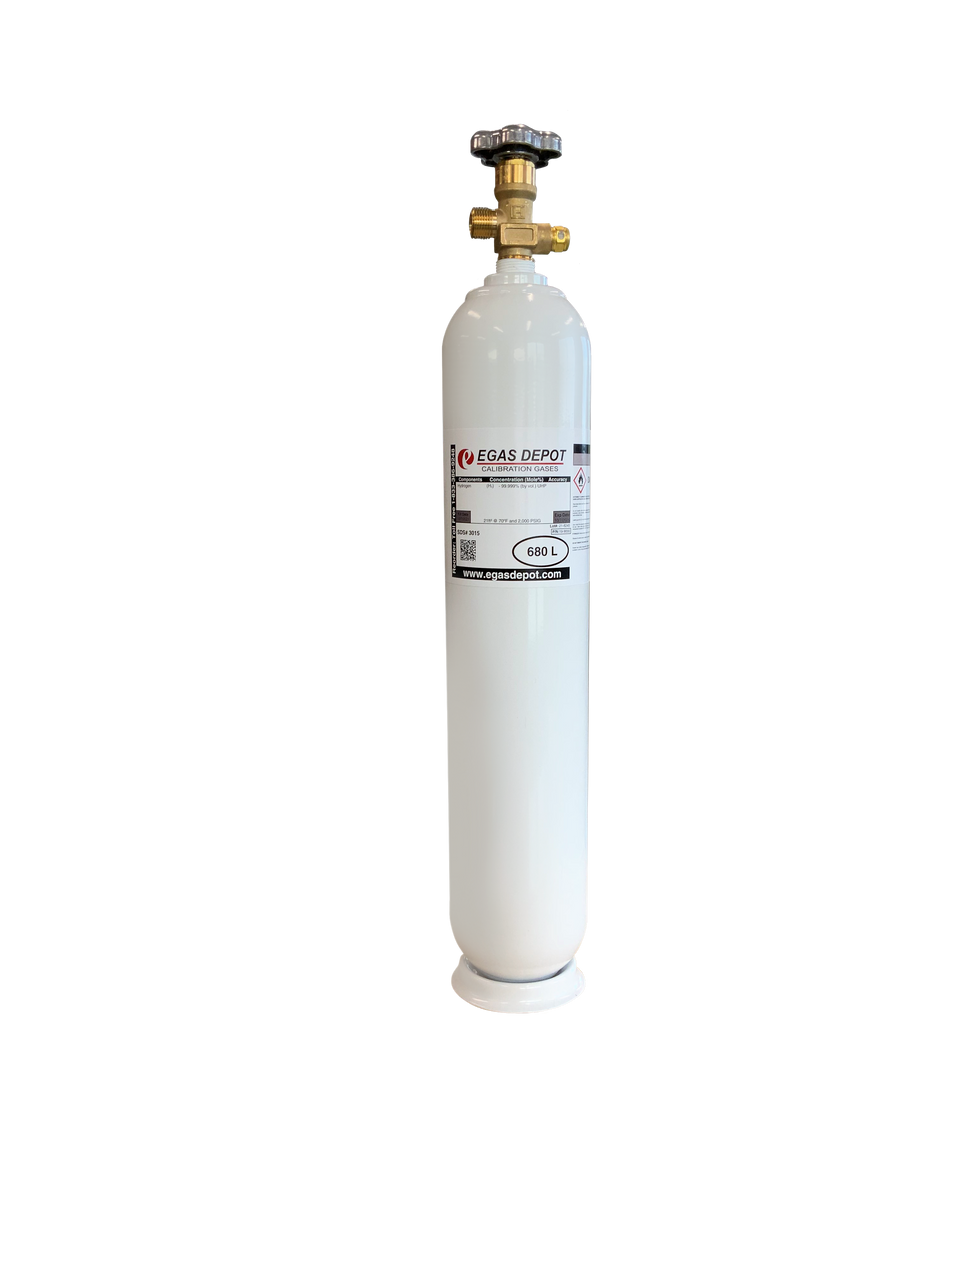 680 Liter-Methane 2.5% (50% LEL)/ Oxygen 12.0%/ Nitrogen